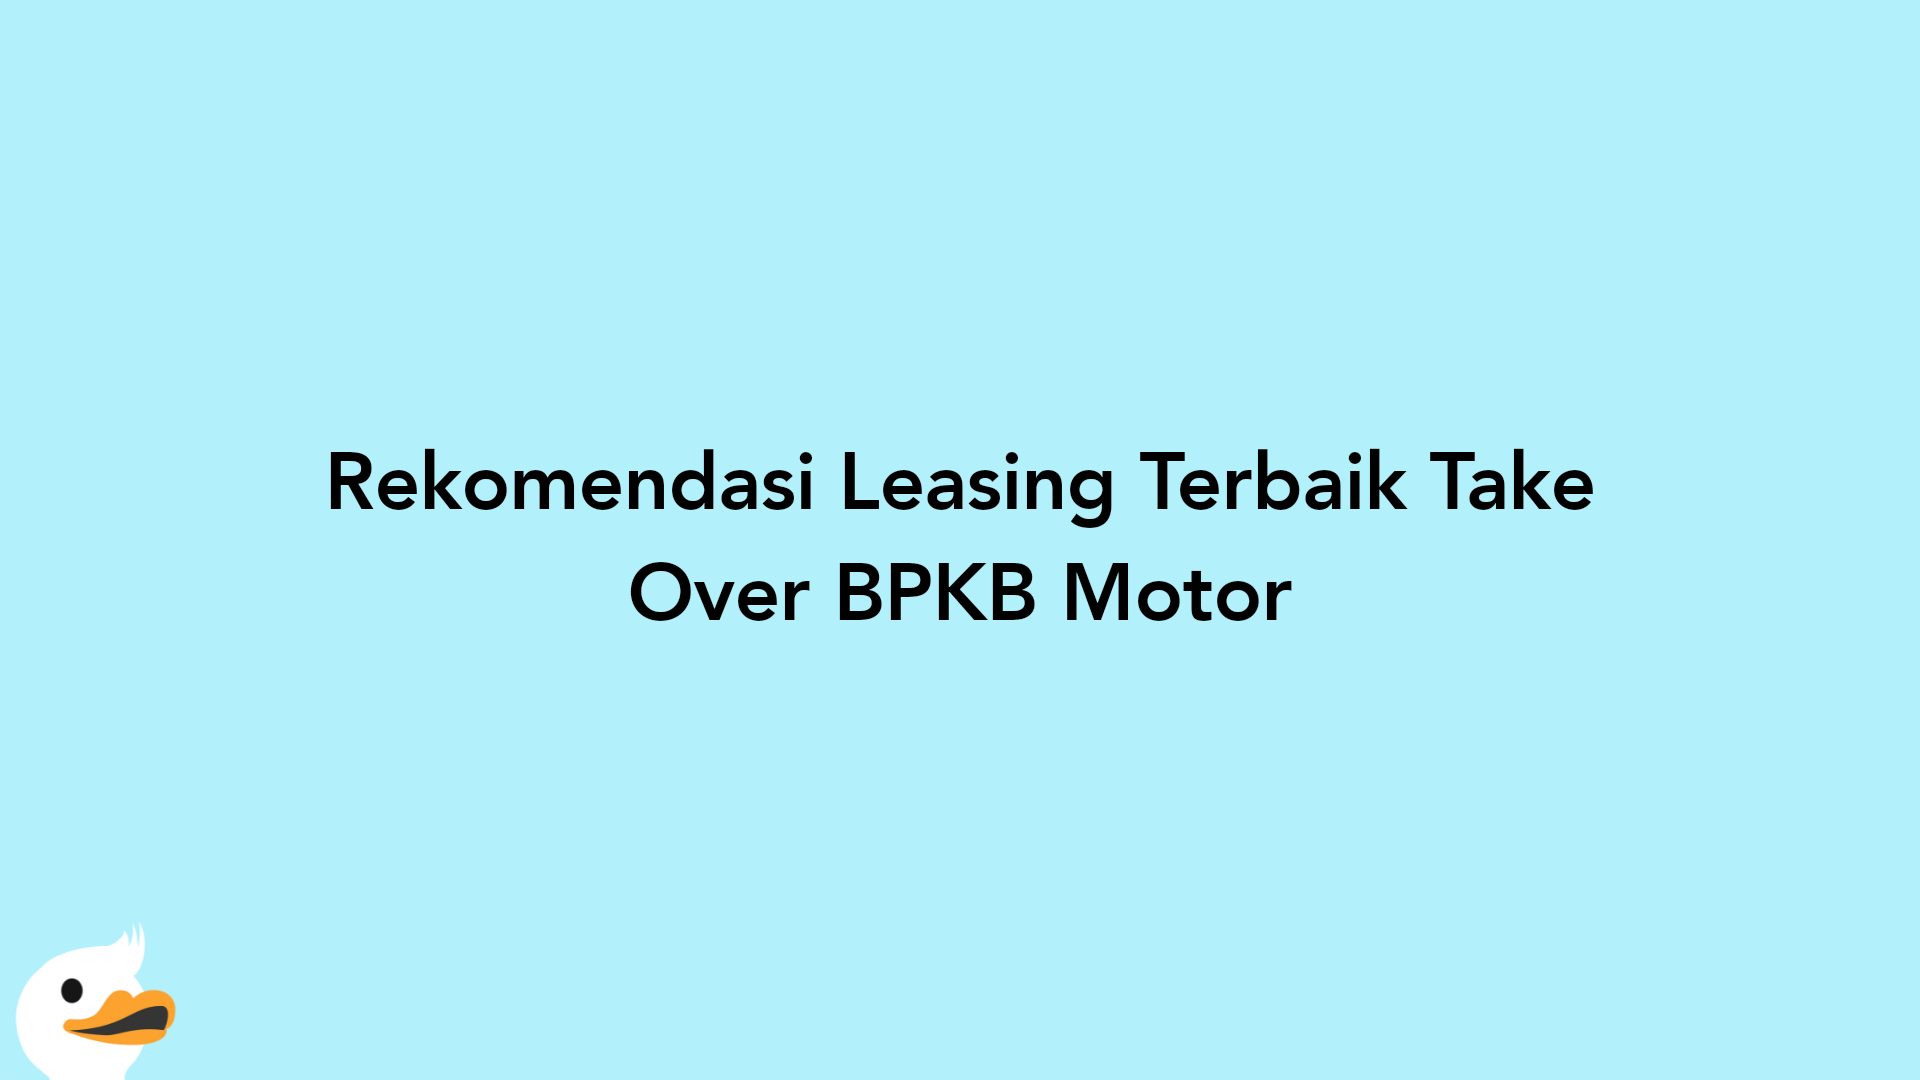 Rekomendasi Leasing Terbaik Take Over BPKB Motor